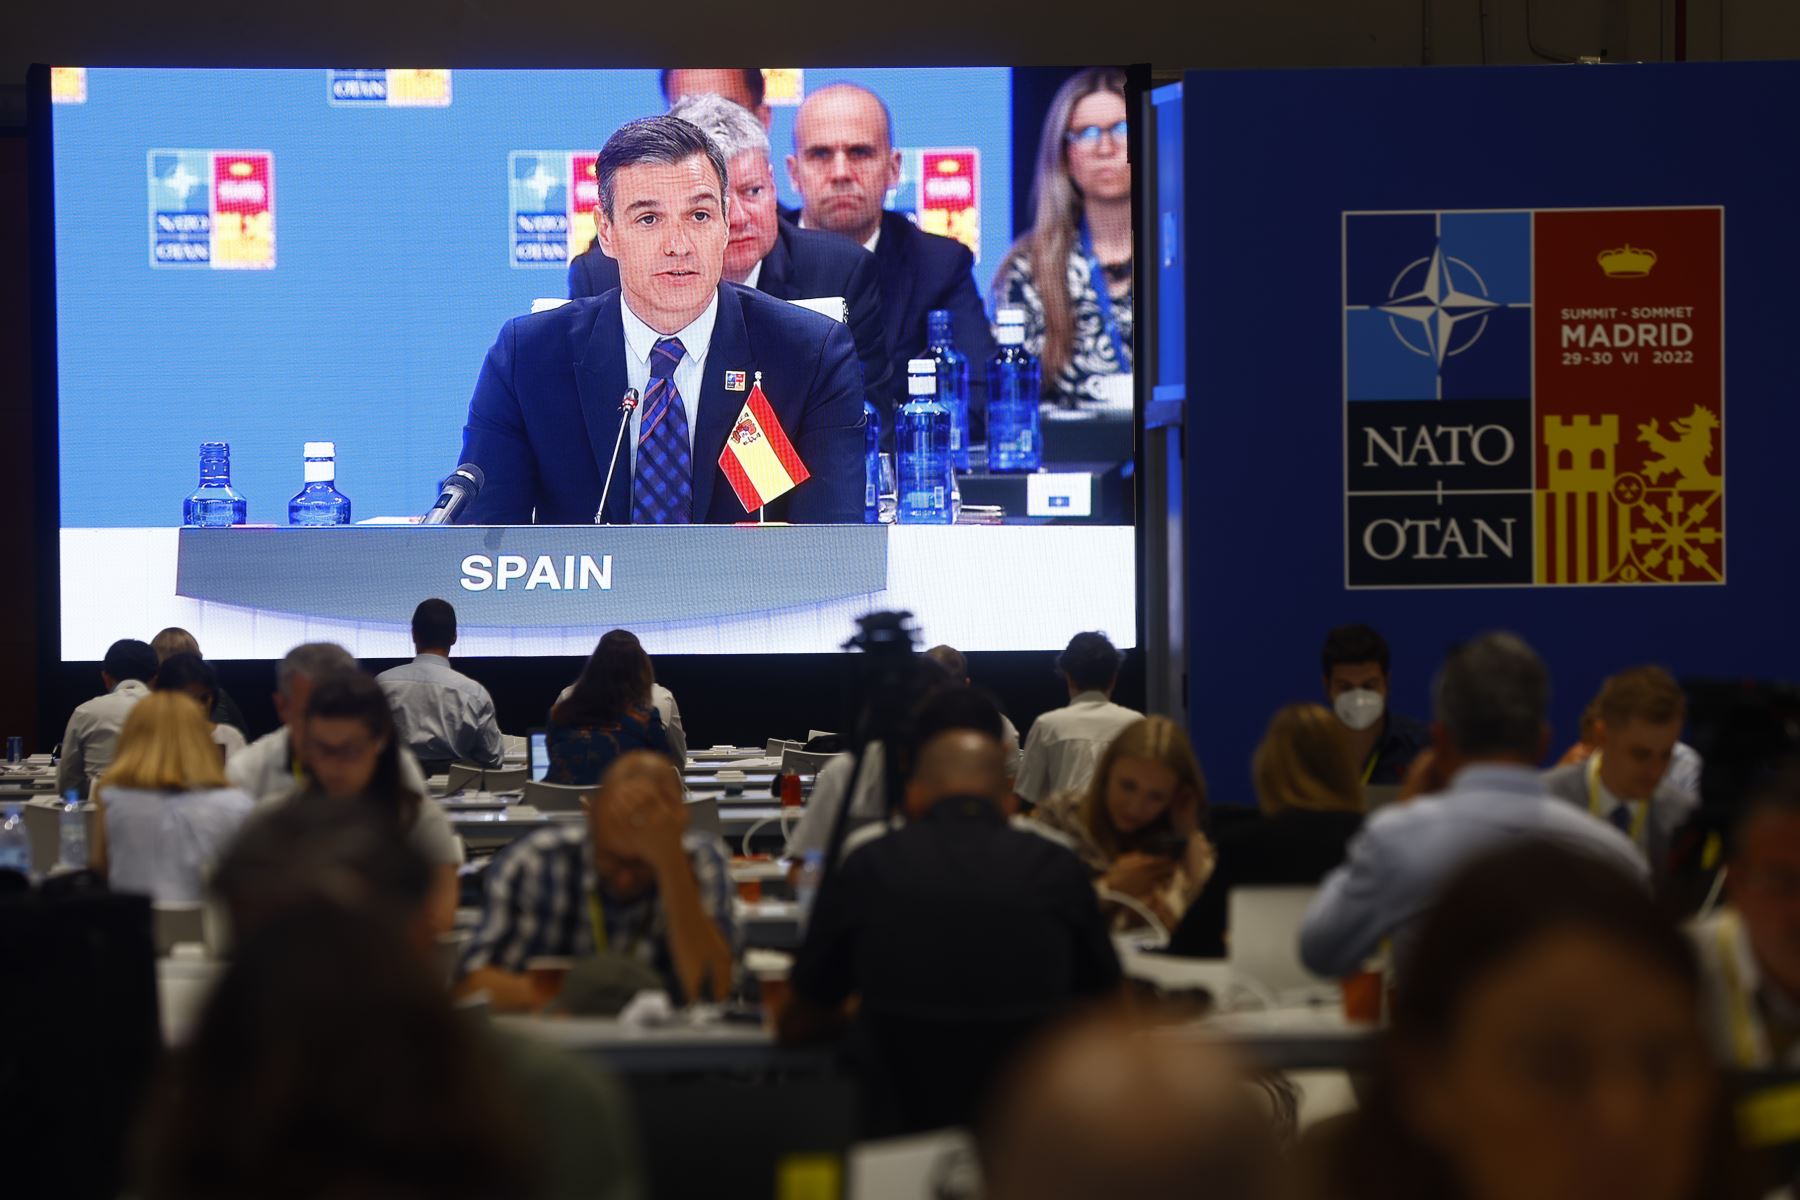 Vista de la sala de prensa durante la primera jornada de la cumbre de la OTAN que se celebra este miércoles en el recinto de Ifema, en Madrid. 
Foto: EFE